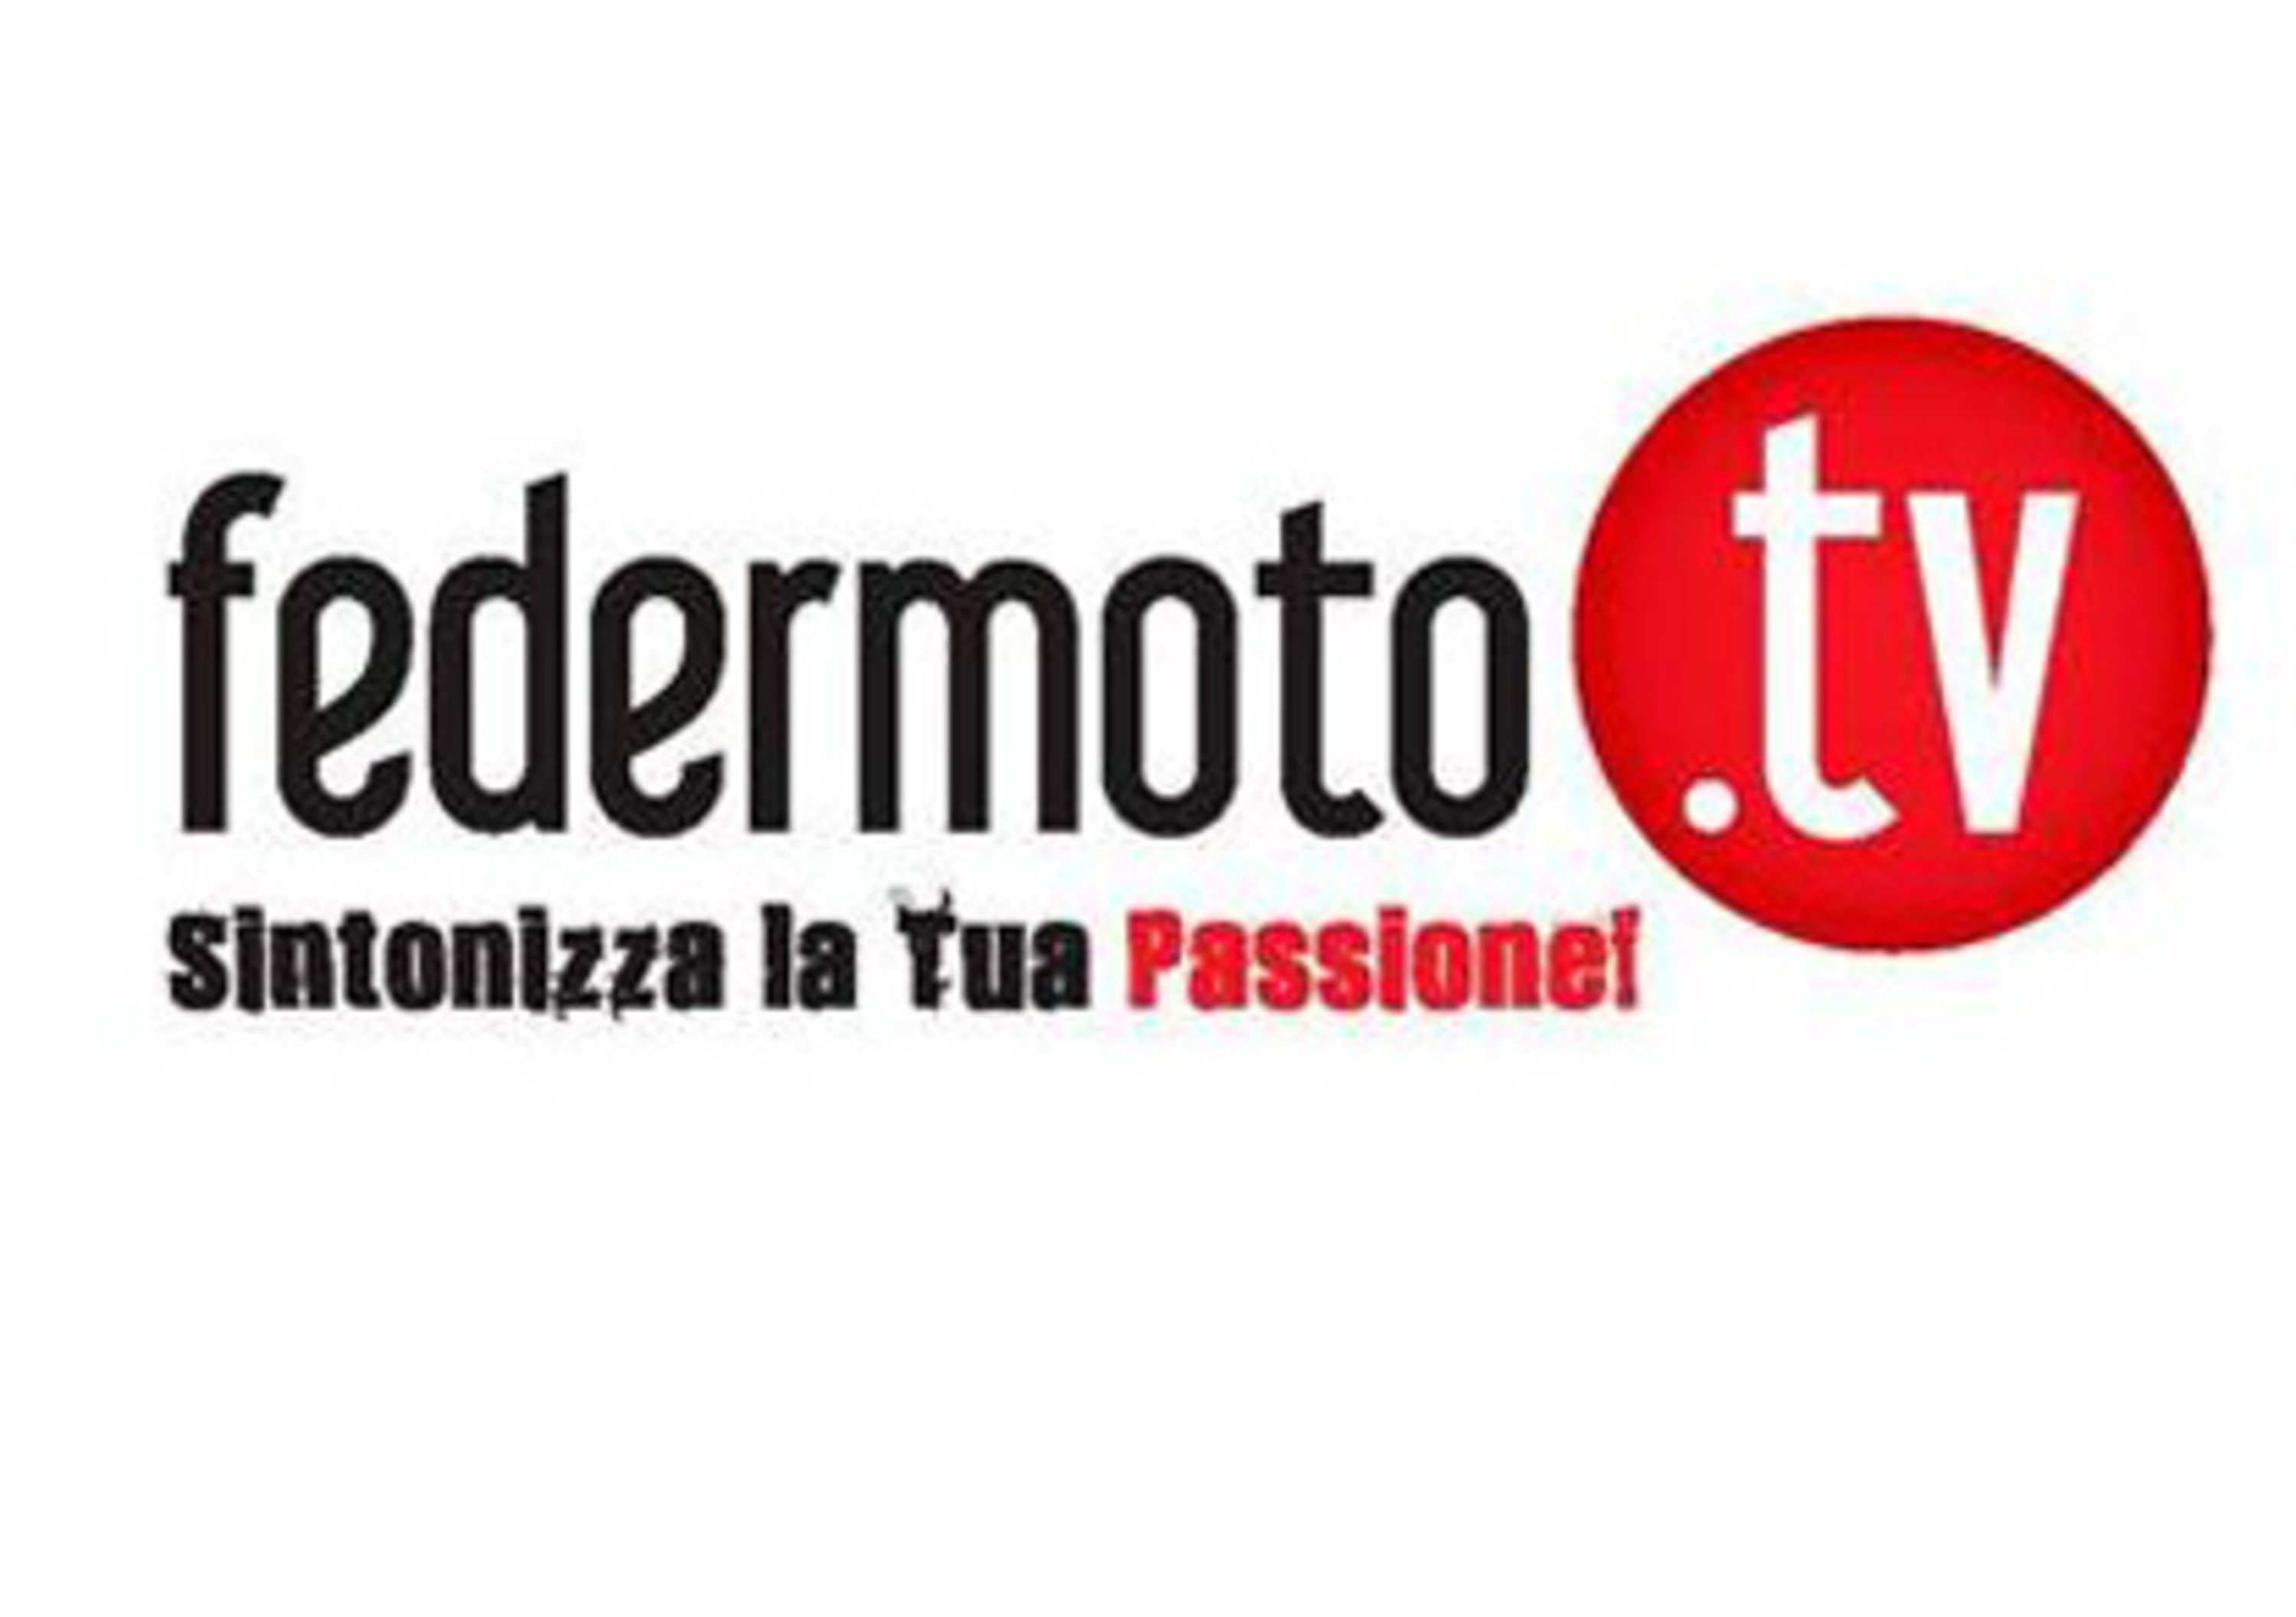 Nasce il primo notiziario della Federazione Motociclistica Italiana